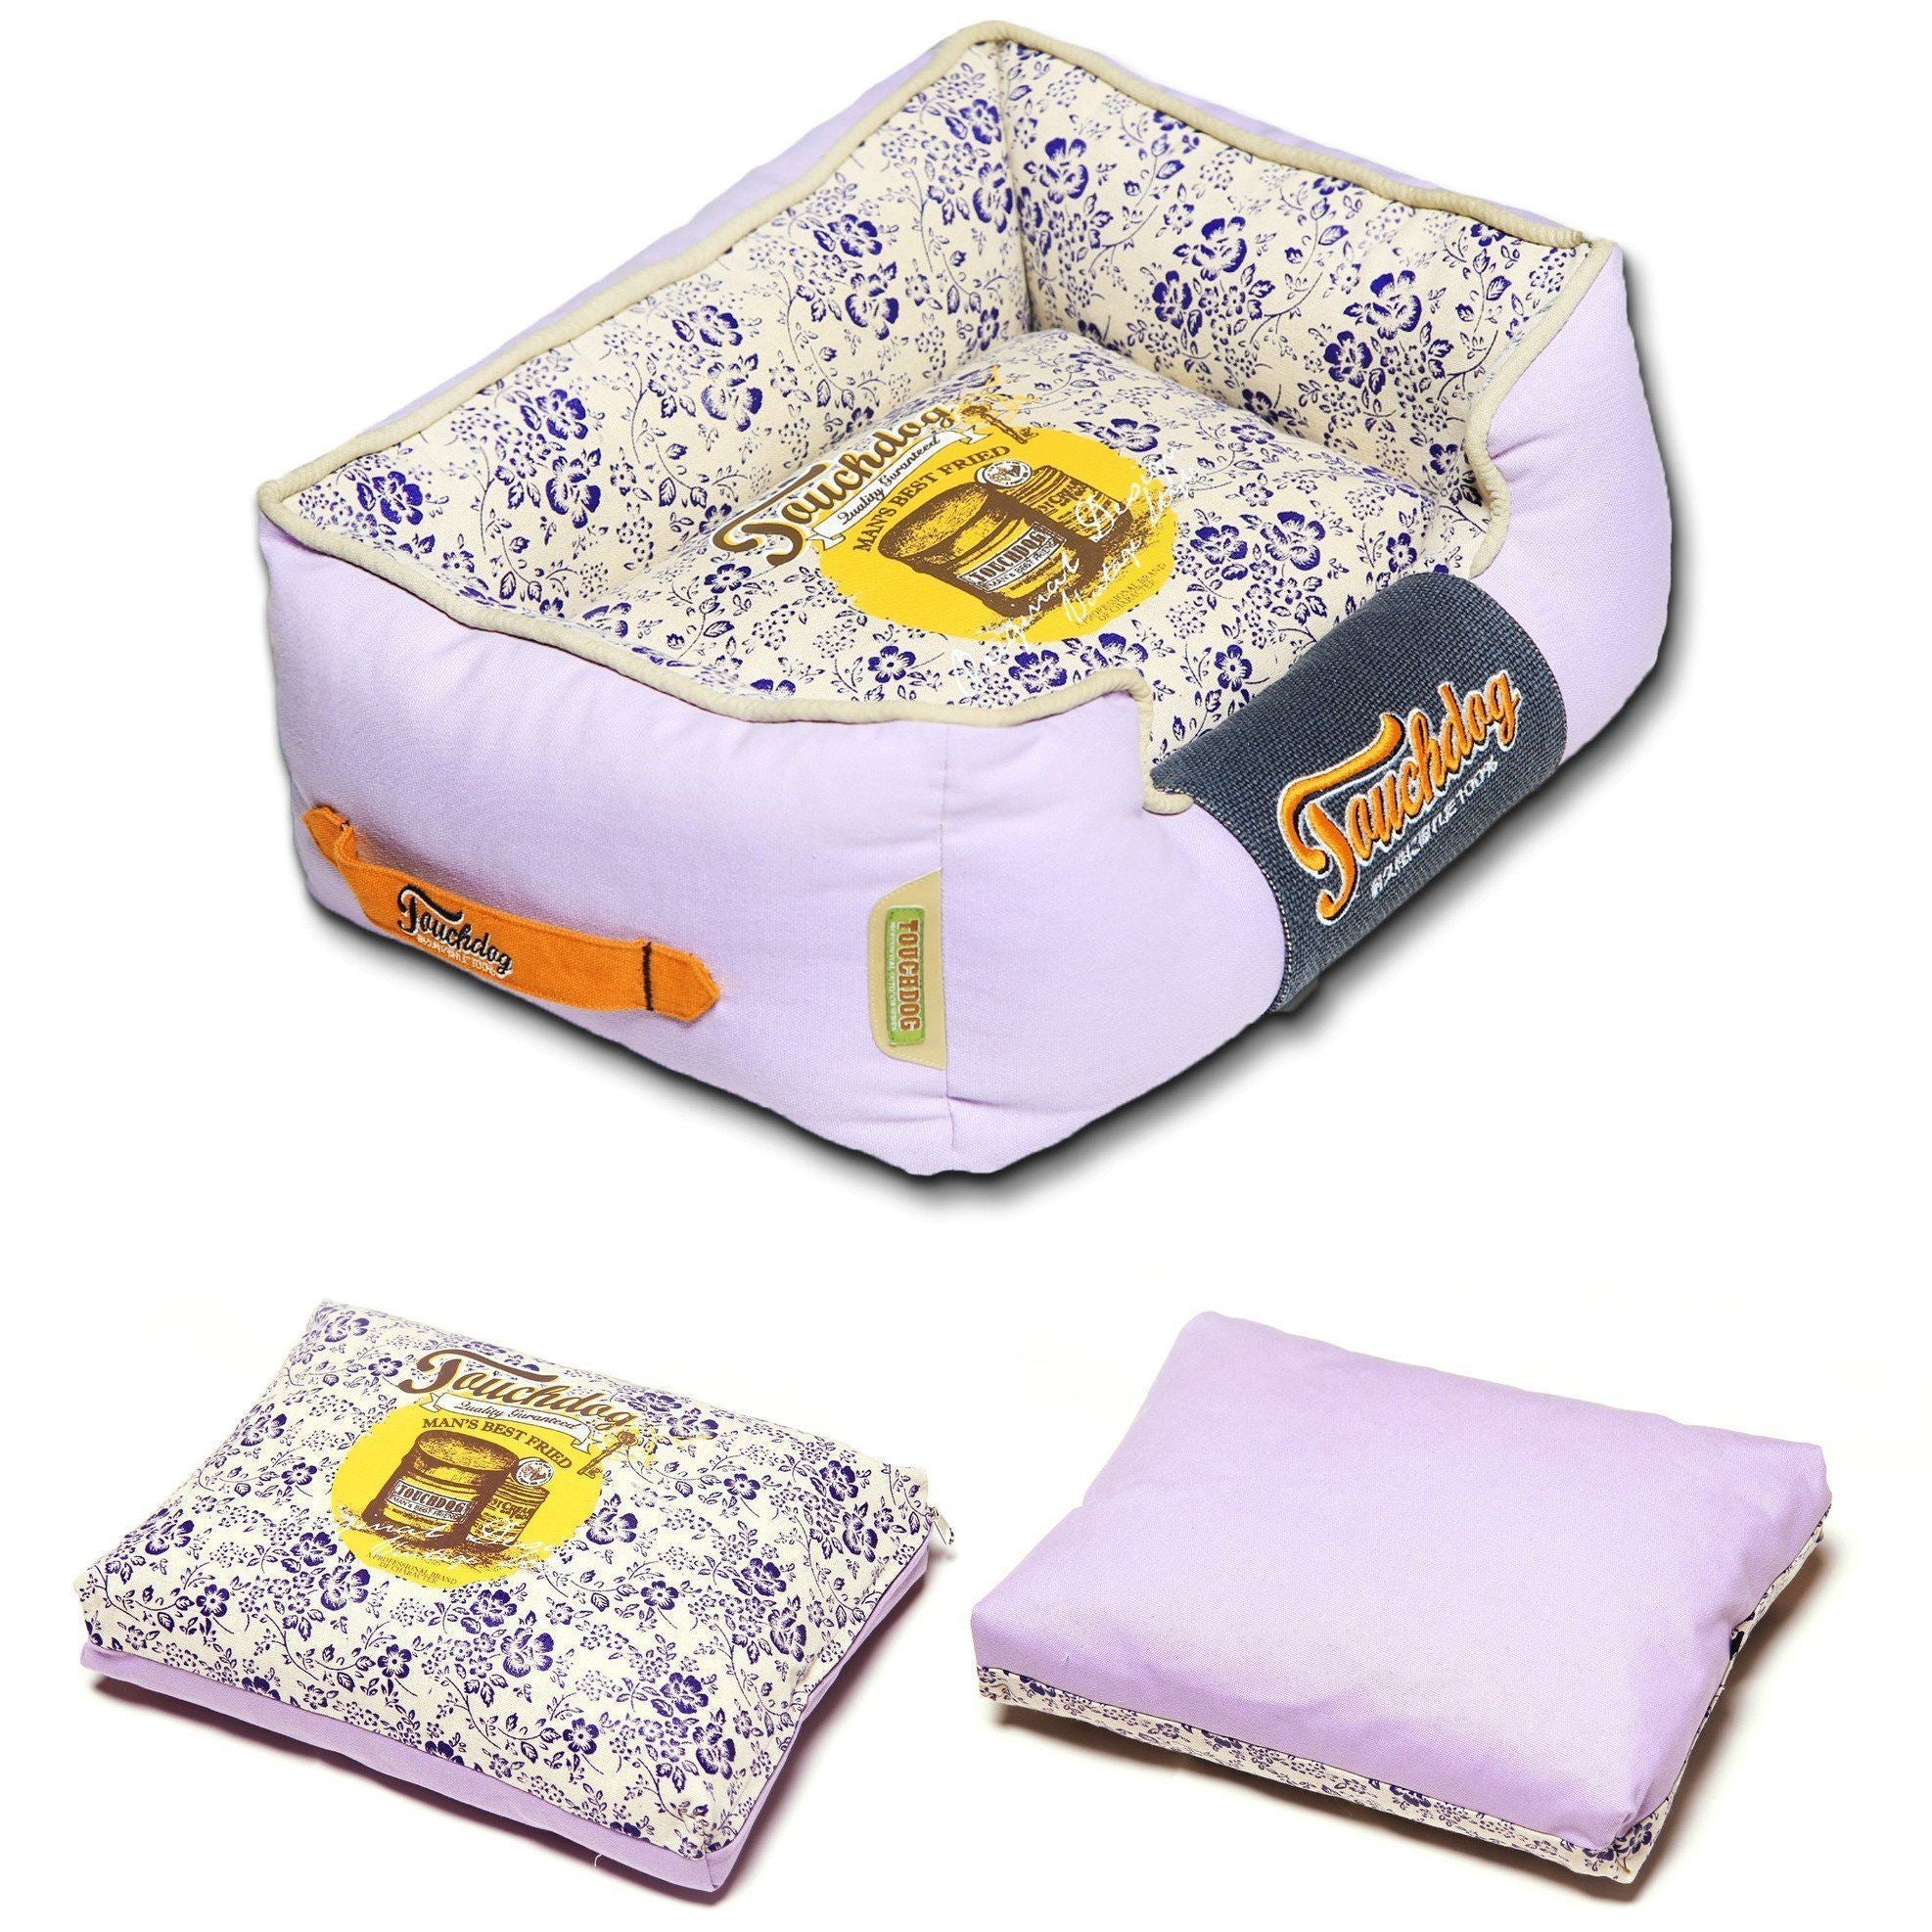 Touchdog ® 'Floral-Galoral' Designer Rectangular Dog Bed  